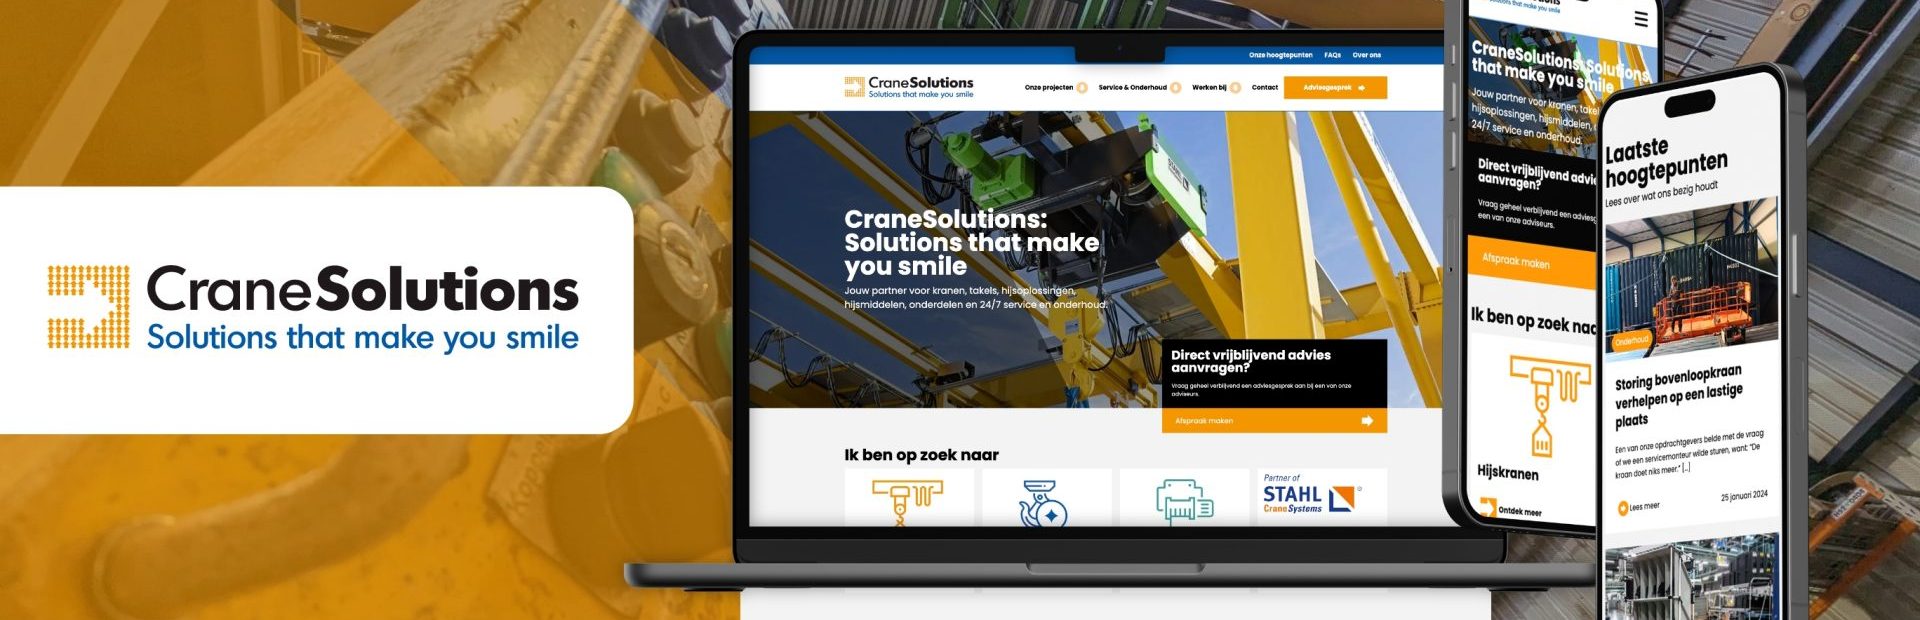 Product-driven website gelanceerd voor CraneSolutions